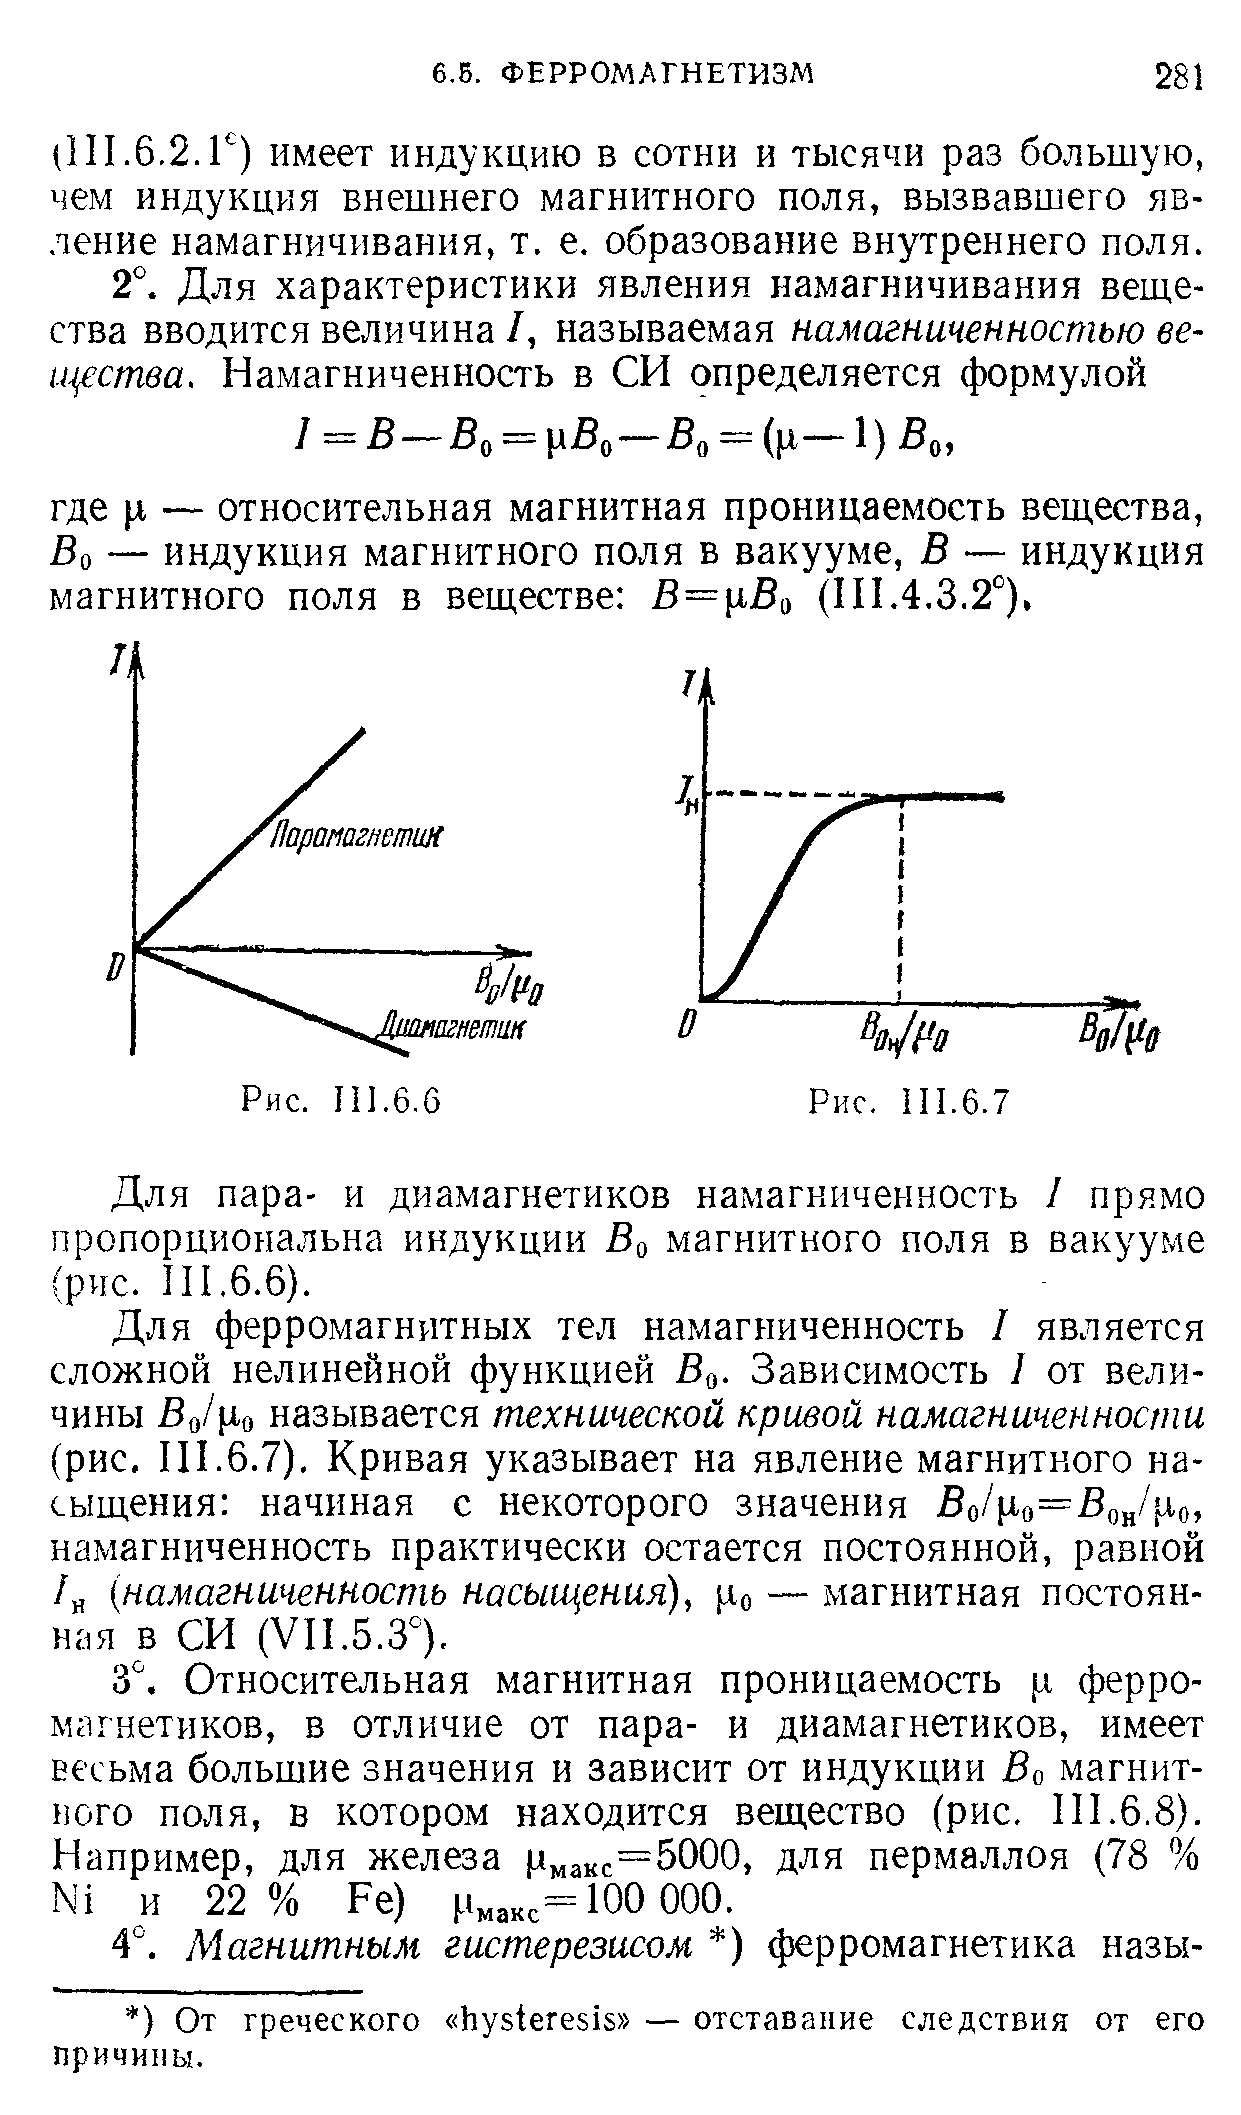 Для пара- и диамагнетиков намагниченность 1 прямо пропорциональна индукции Во магнитного поля в вакууме (рис. II 1.6.6).
